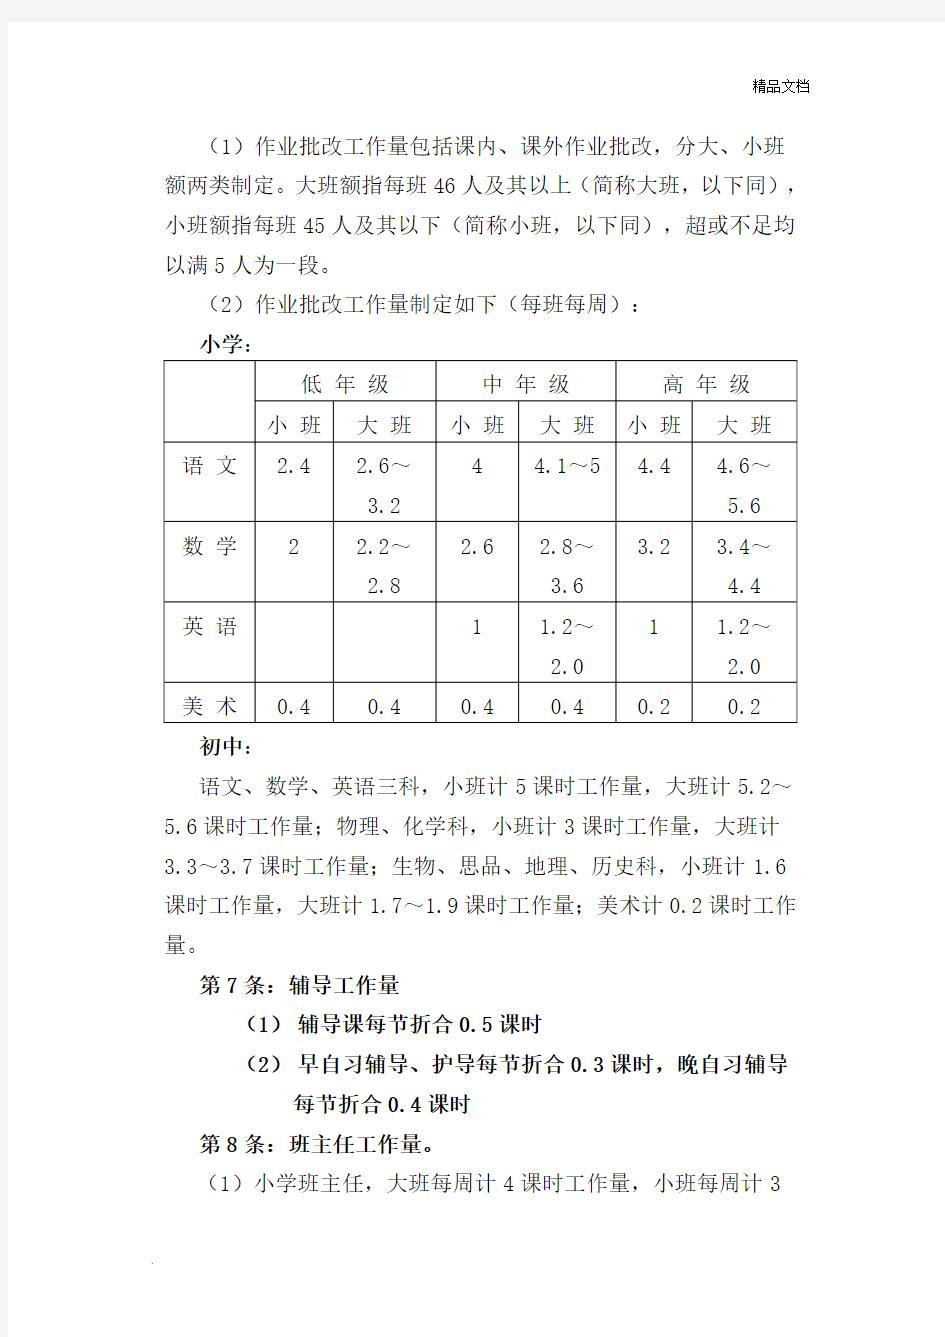 小杨学校中小学教师工作量量化标准参考方案